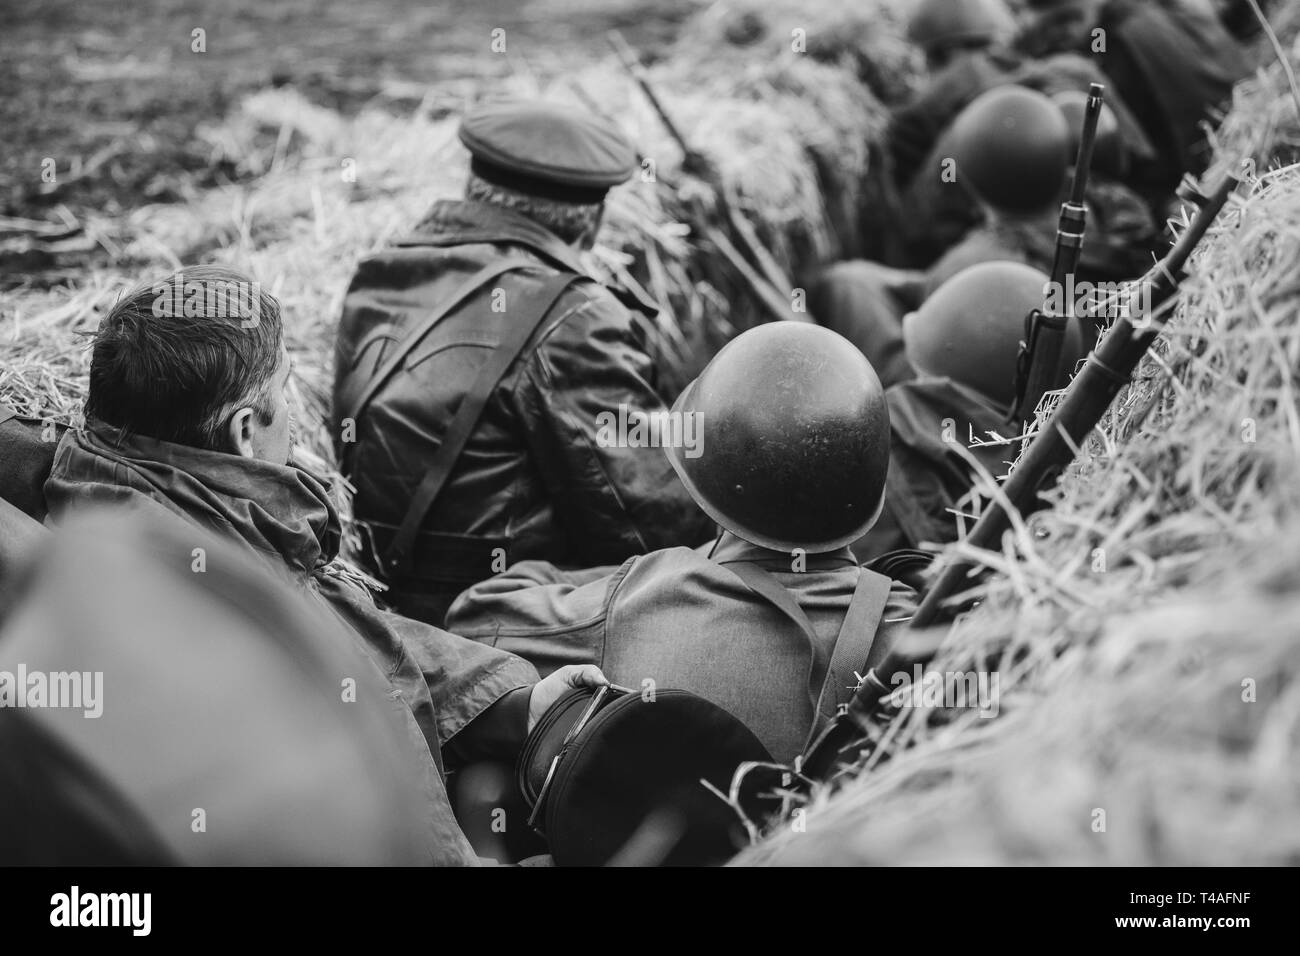 Re-enactors gekleidet als Zweiter Weltkrieg russisch-sowjetischen Soldaten der Roten Armee versteckt im Graben sitzen. Foto in den Farben Schwarz und Weiß. WWII WW2. Stockfoto